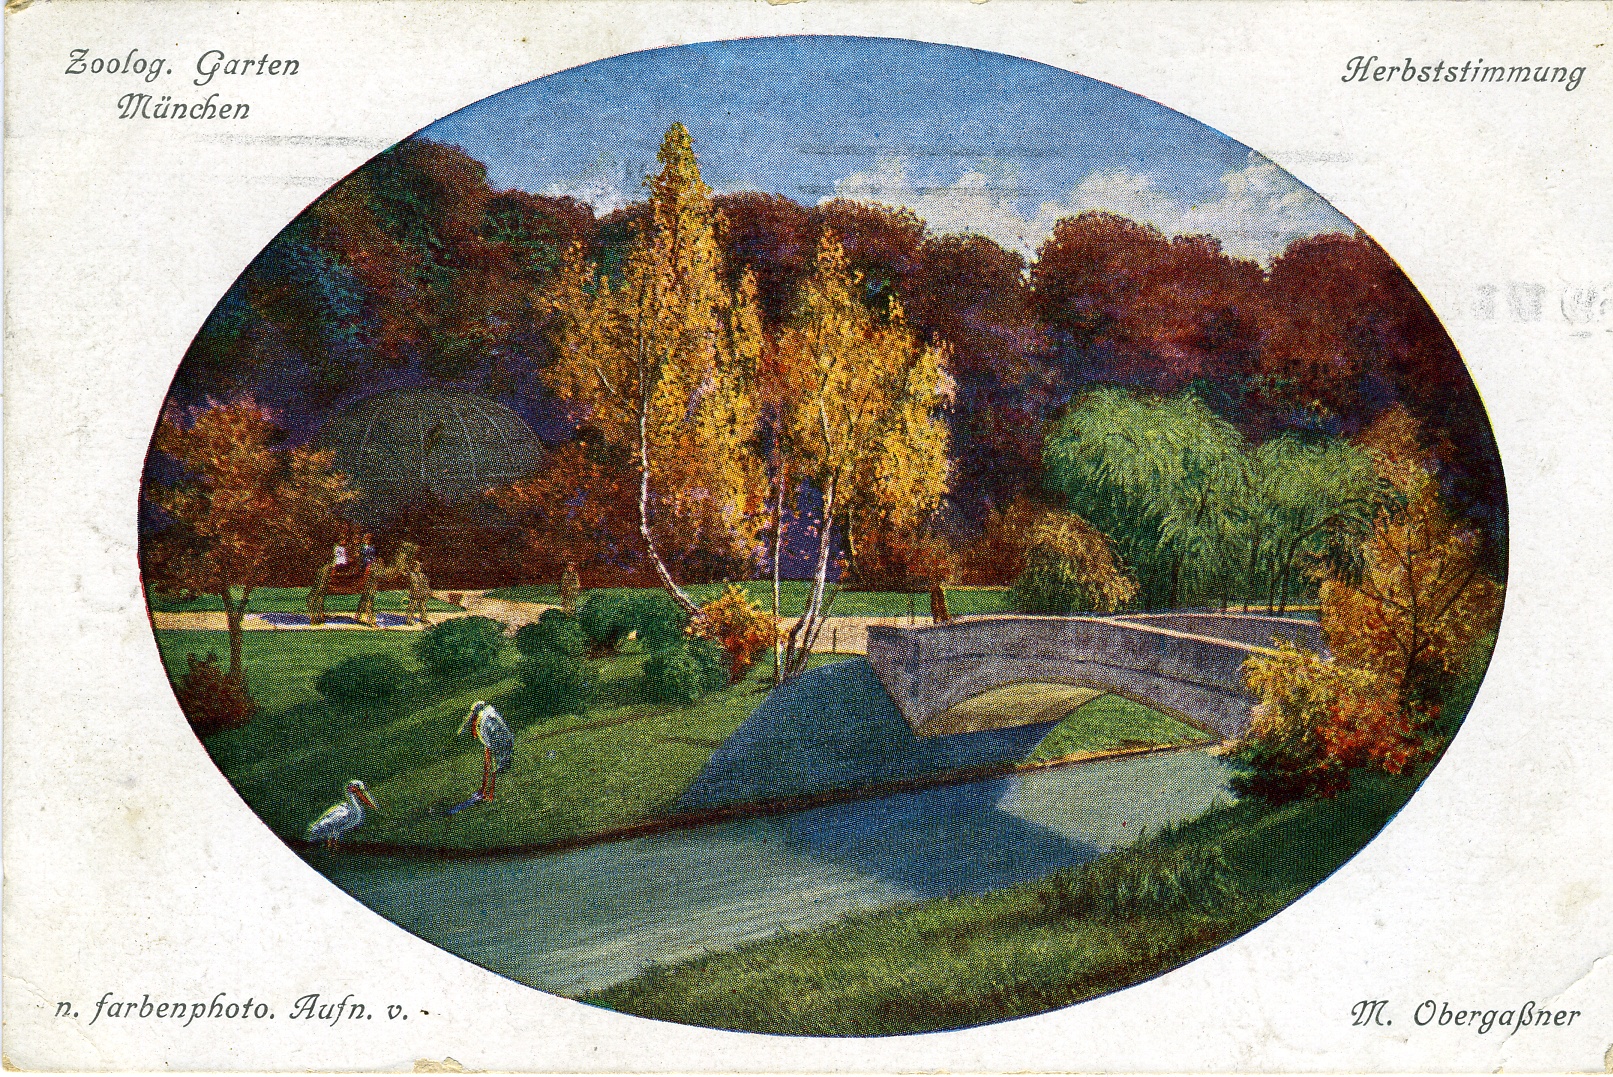 Postkarte "München, Zoologischer Garten" (Historisches Museum der Pfalz, Speyer CC BY)